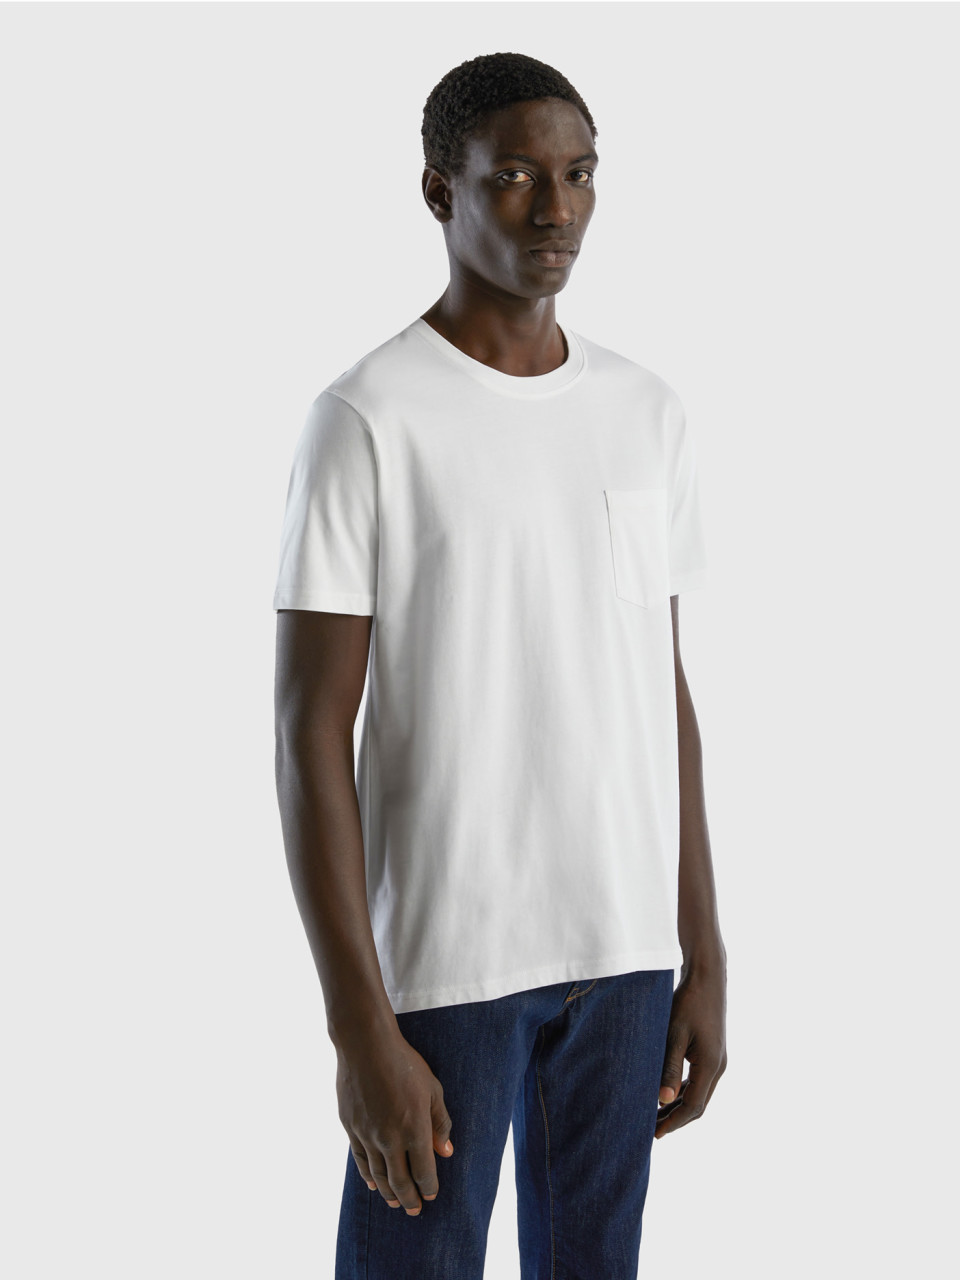 Benetton, Camiseta De 100 % Algodón Con Bolsillo, Blanco, Hombre